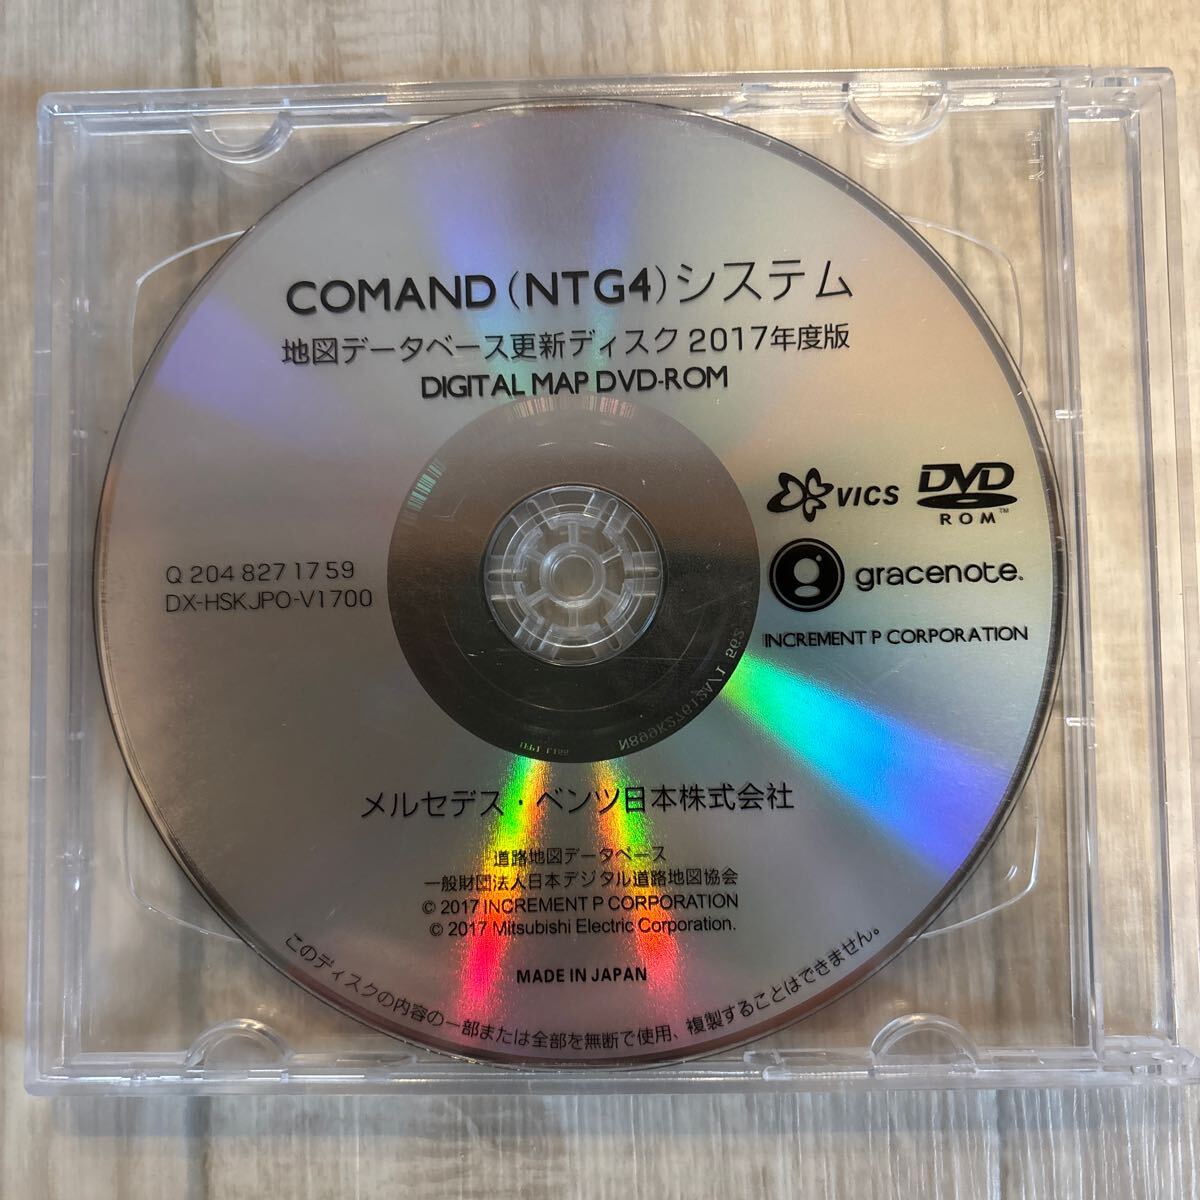 メルセデスベンツ ナビデータ更新用DVD COMAND(NTG4) 2017年度版 DVD2枚入の画像2